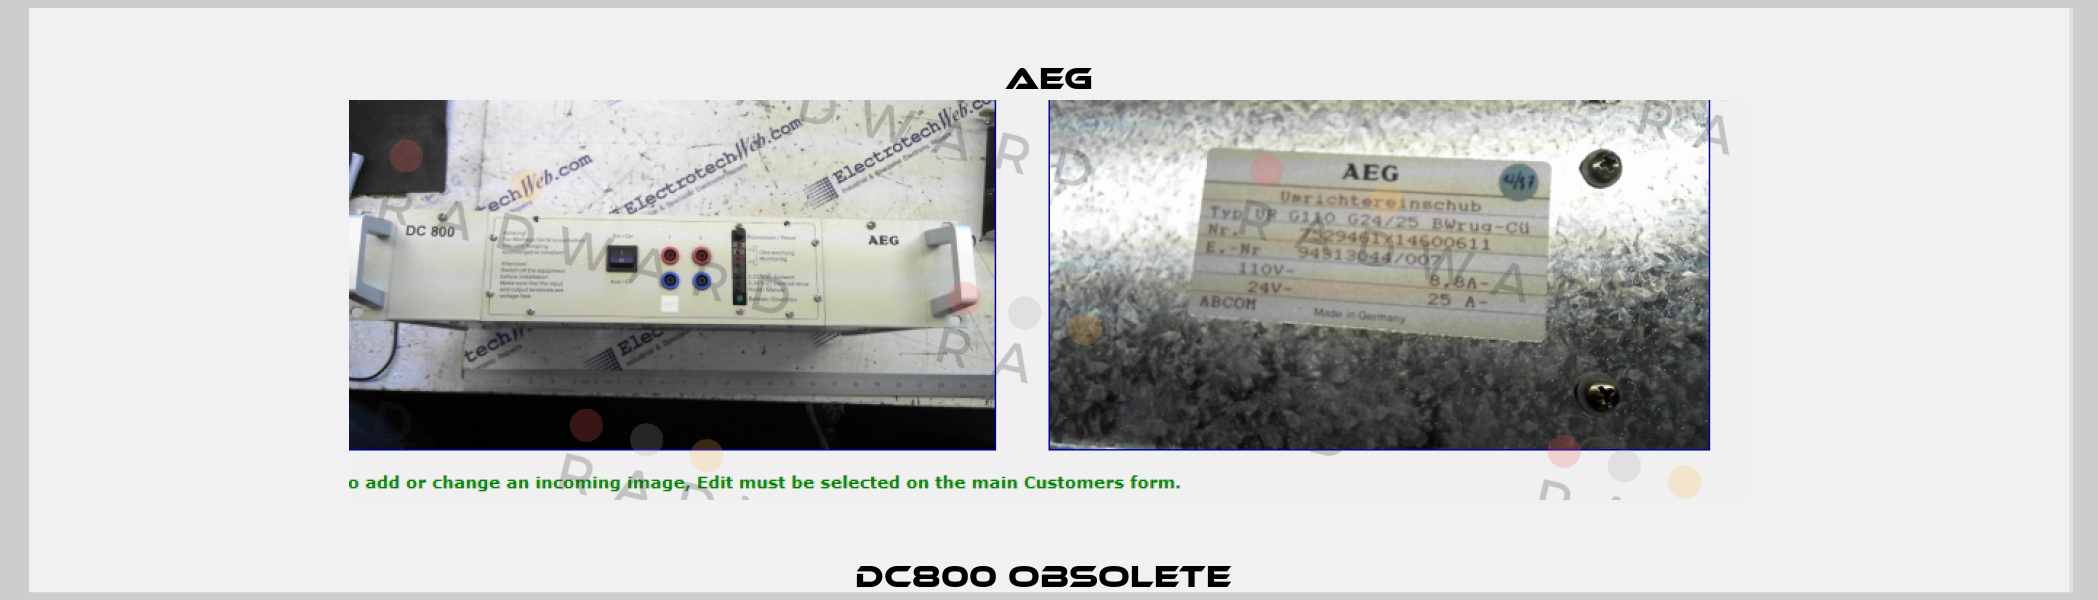 DC800 obsolete  AEG